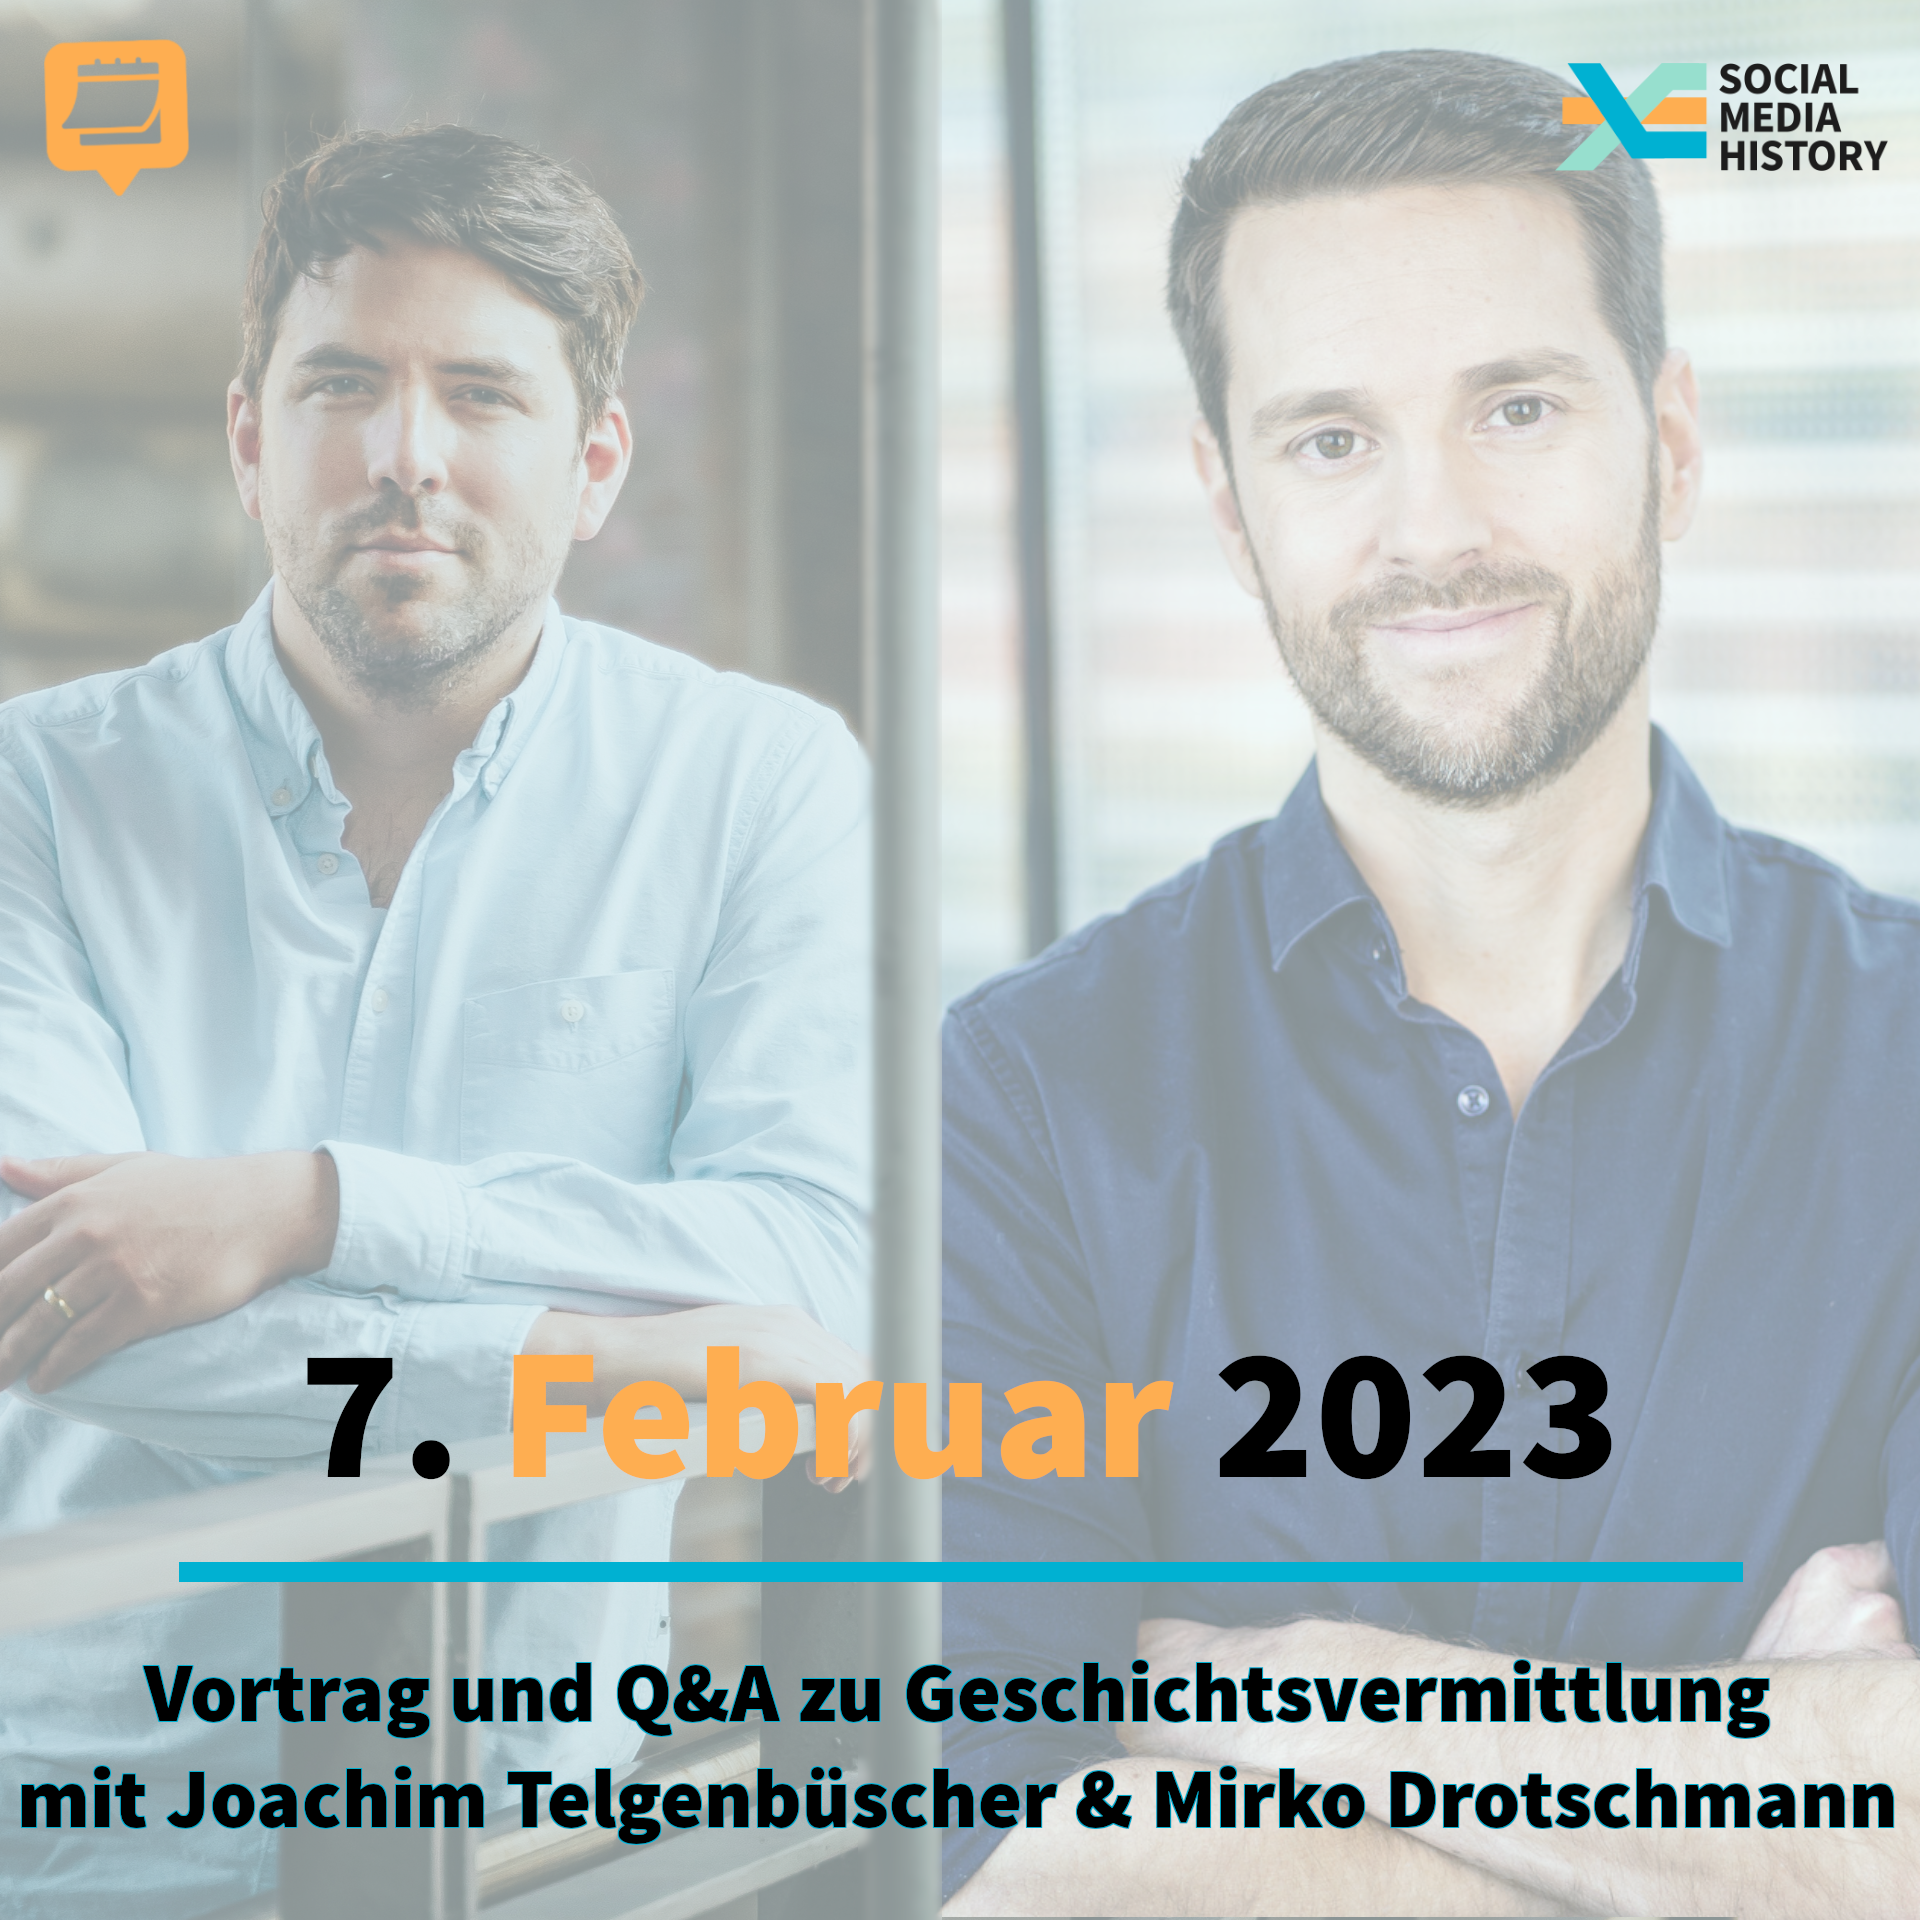 Ankündigung Vortrag und Q and A zu geschichtsvermittlung mit Joachim telgenbüscher und Mirko Drotschmann am siebten Februar 2023.